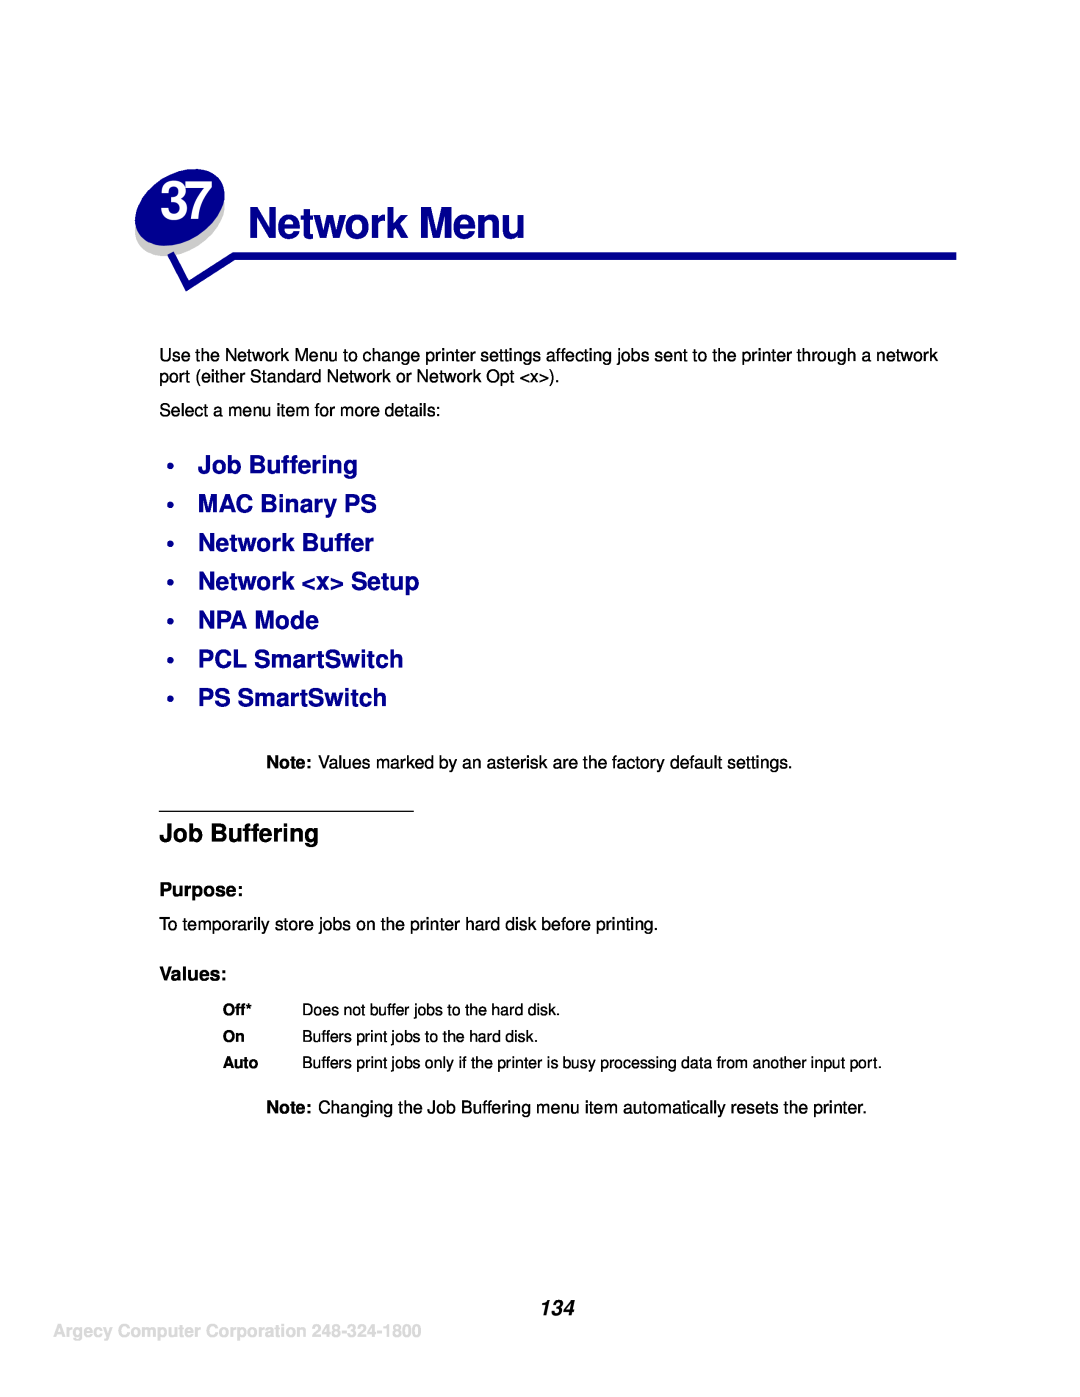 IBM 1125 Network Menu, Job Buffering MAC Binary PS Network Buffer Network x Setup NPA Mode, PCL SmartSwitch PS SmartSwitch 